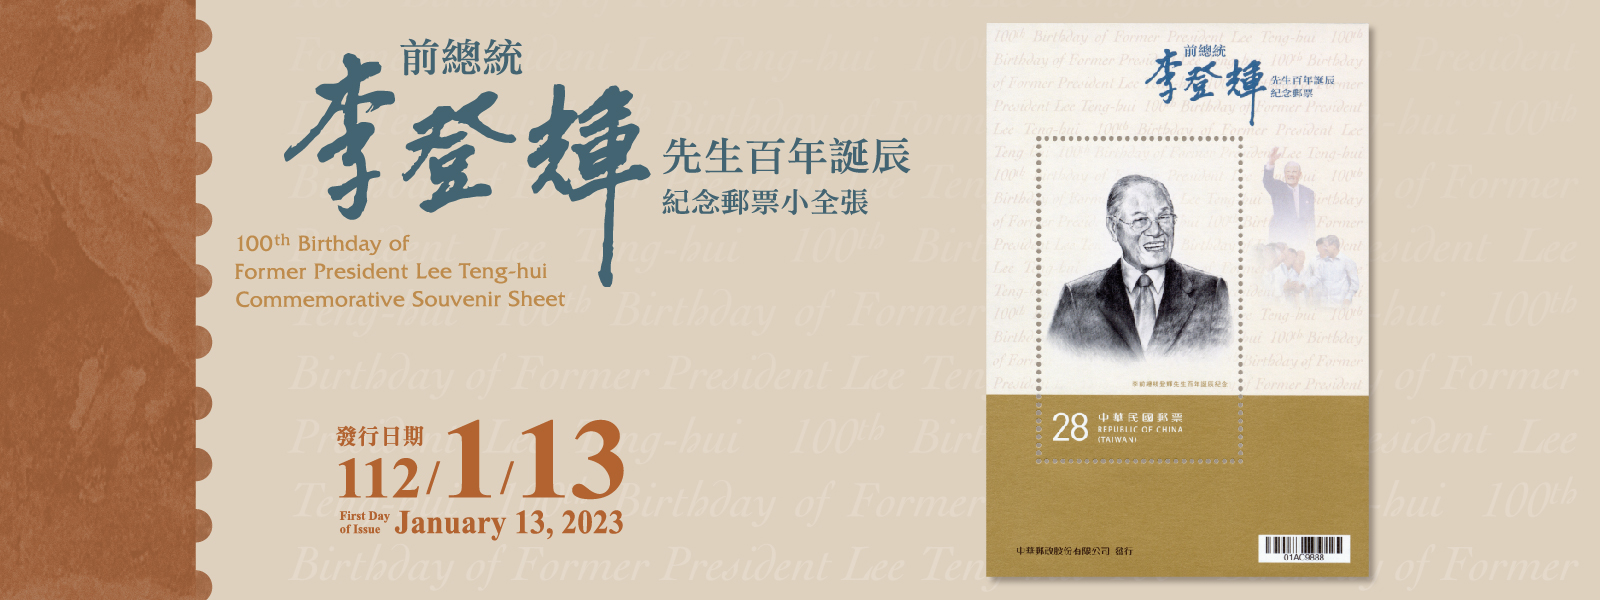 廣告連結:紀347 李前總統登輝先生百年誕辰紀念郵票小全張